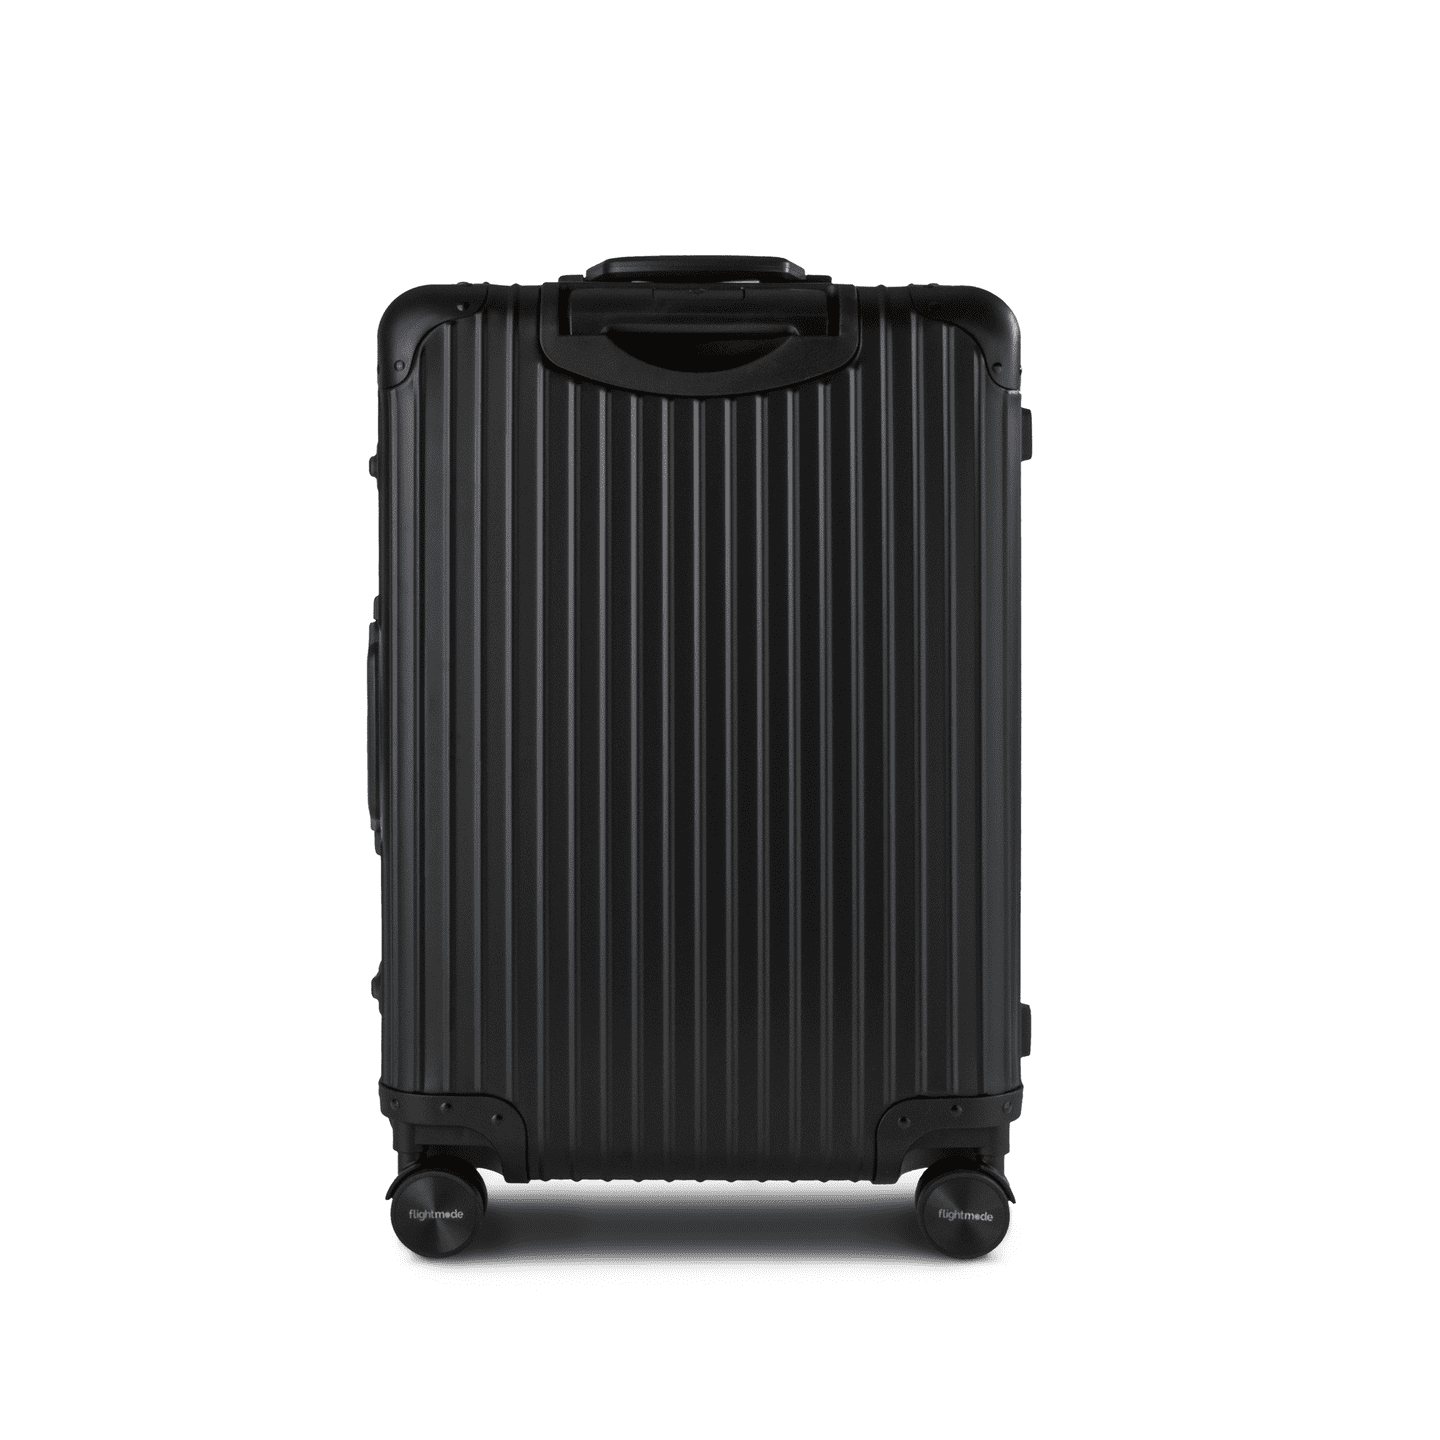 Flightmode Aluminium Luggage MEDIUM- Black